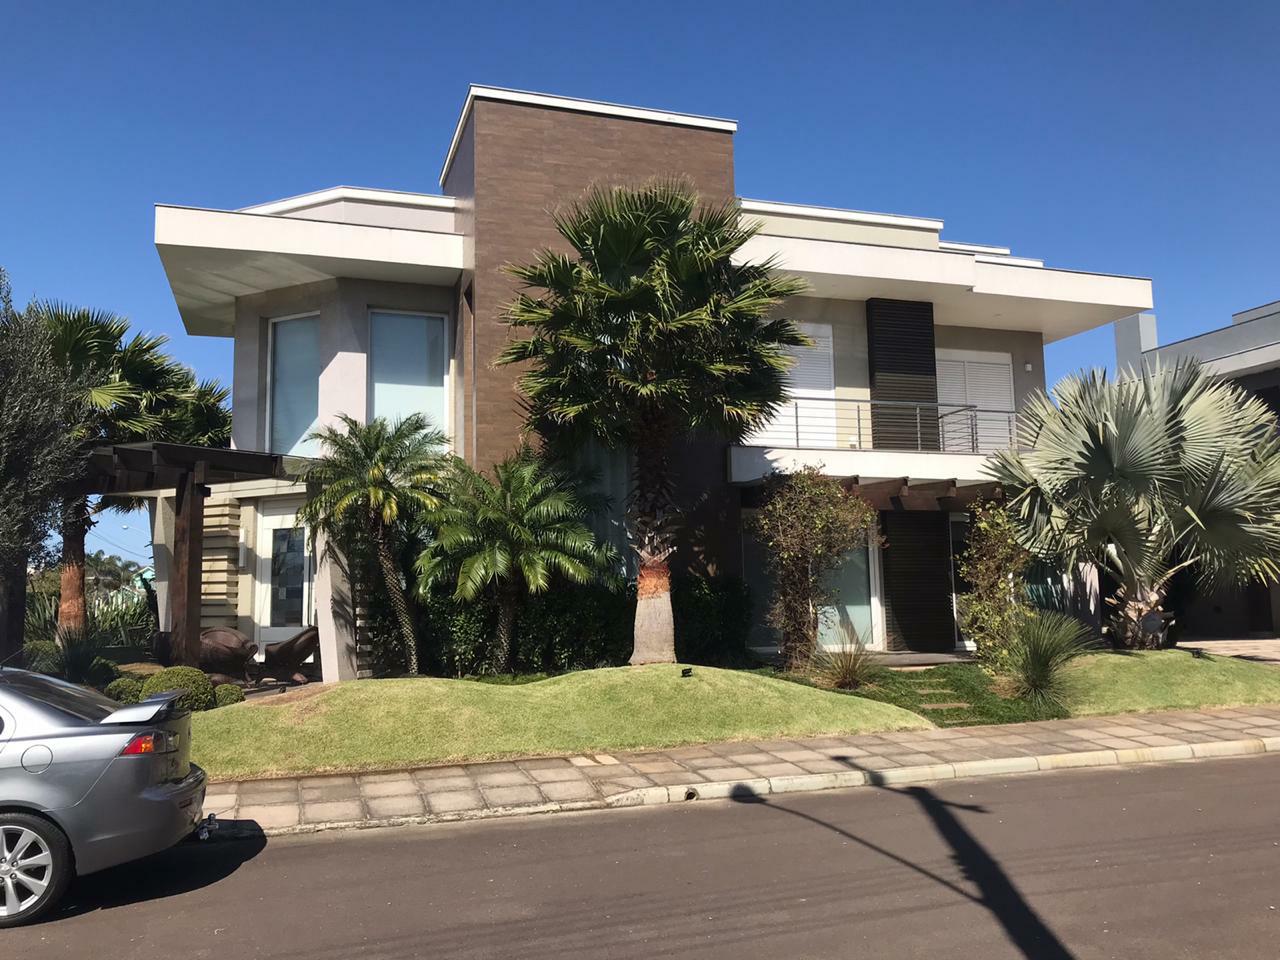 Casa em Condomínio 5 dormitórios para venda, Zona Nova em Capão da Canoa | Ref.: 143